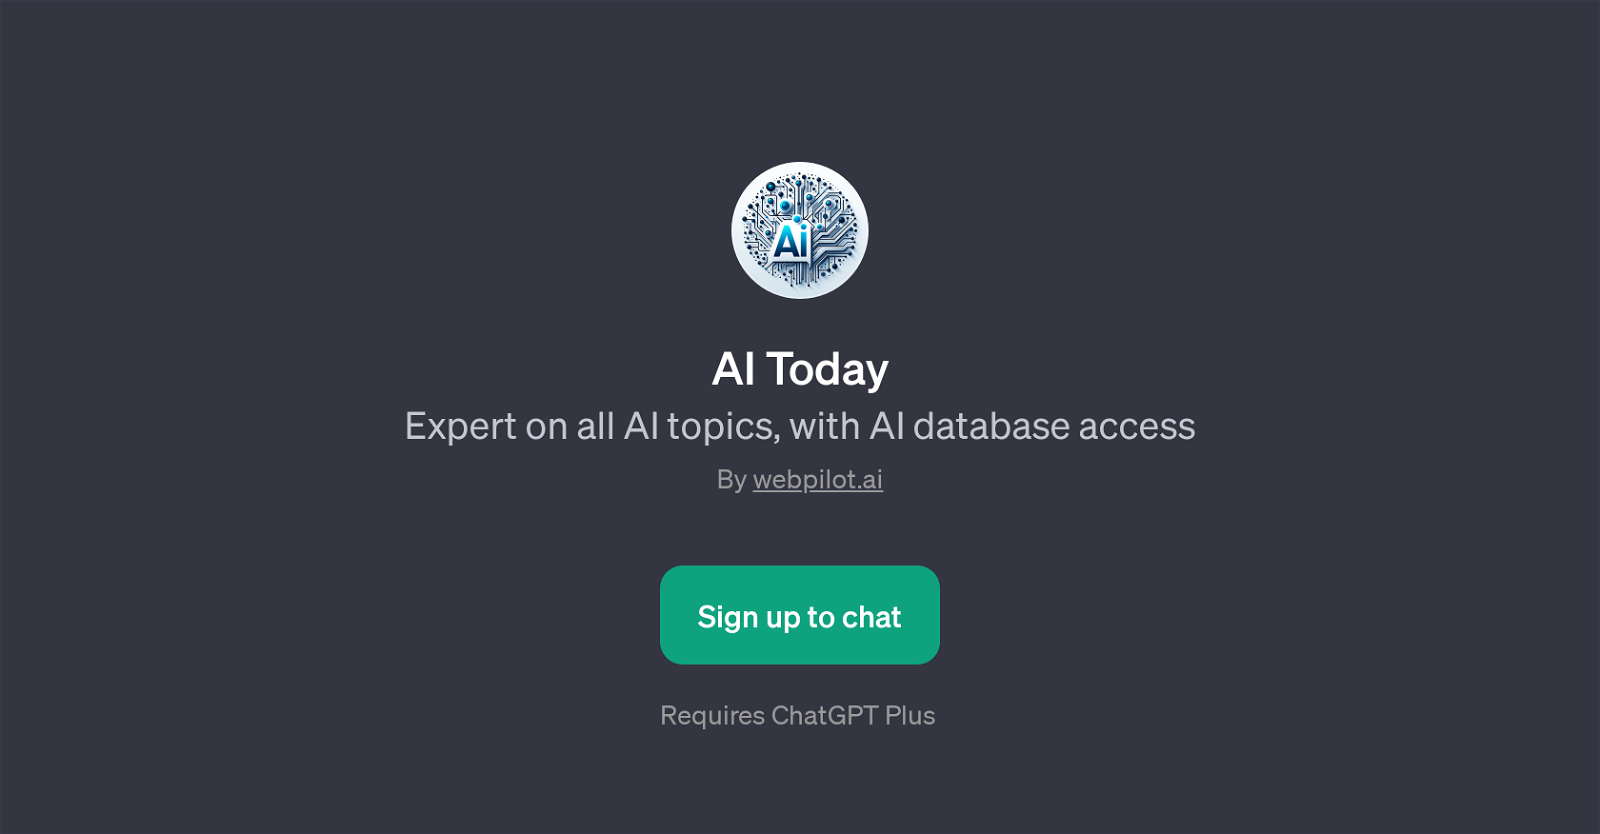 AI Today website